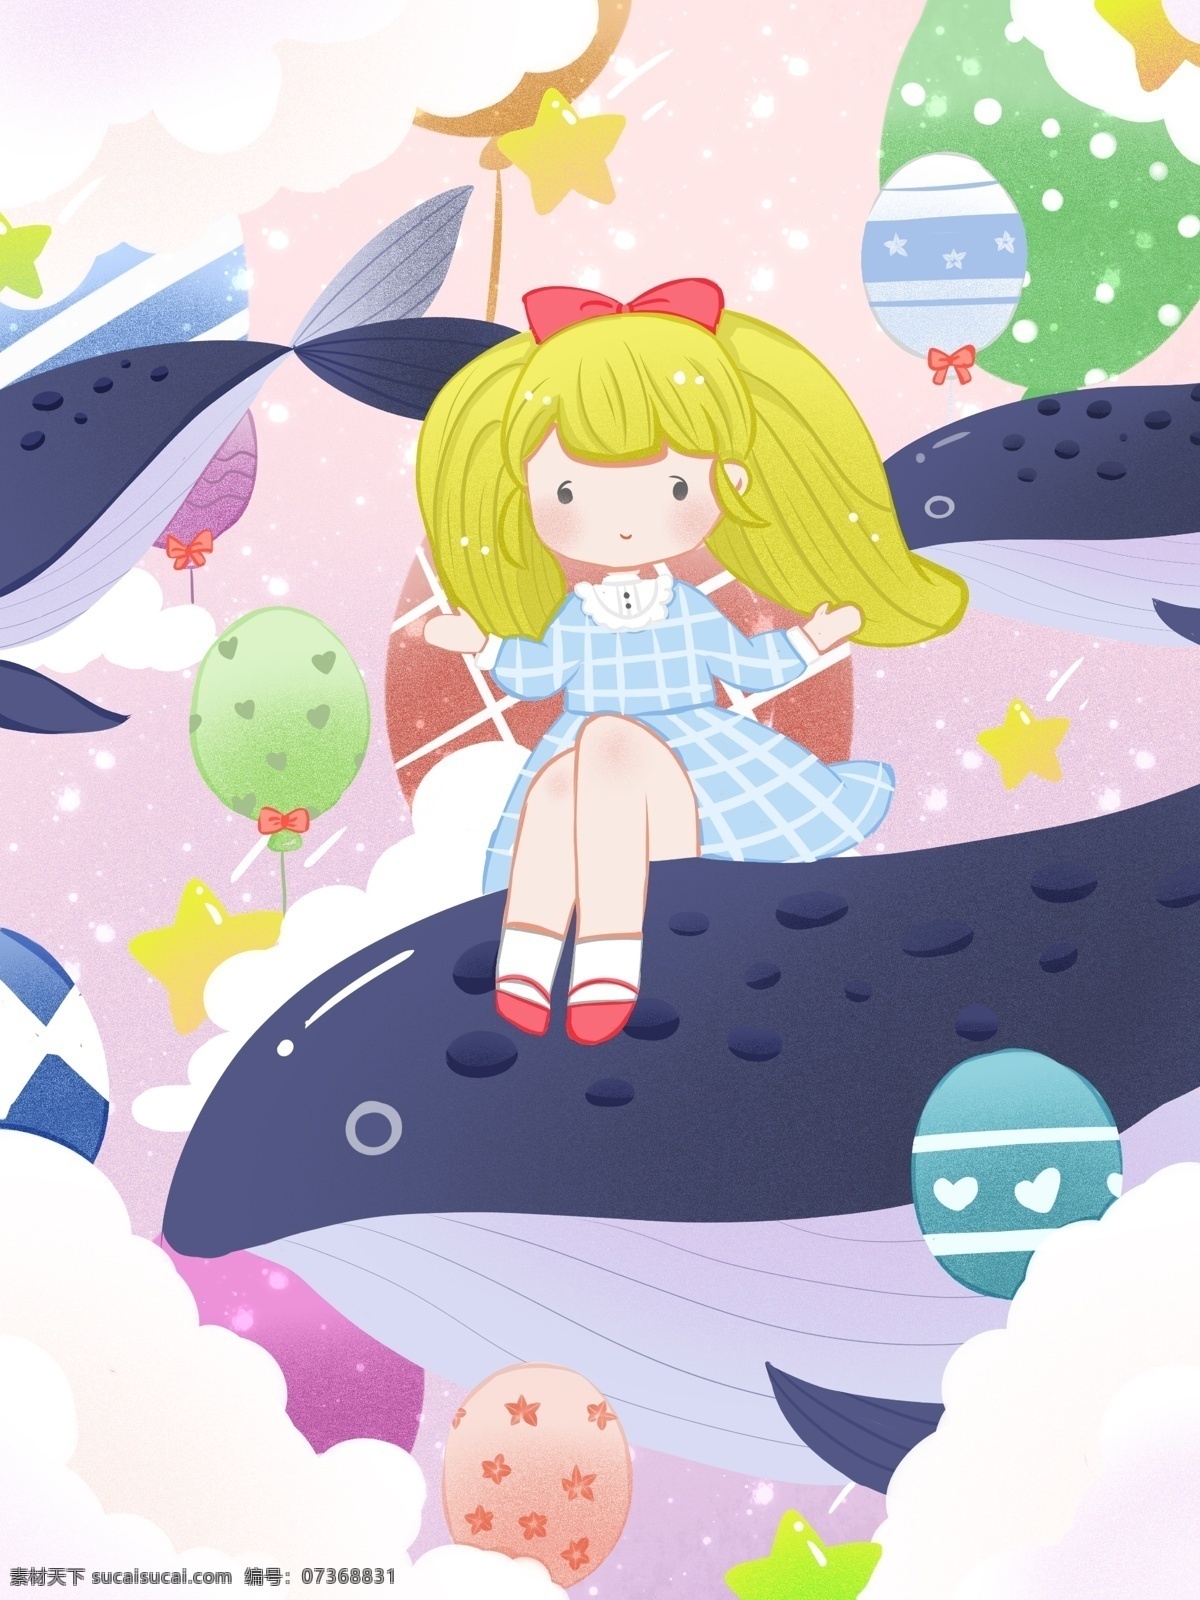 原创 治愈 插画 女孩 鲸鱼 糖果 色 天空 可爱 气球 梦幻 飞翔